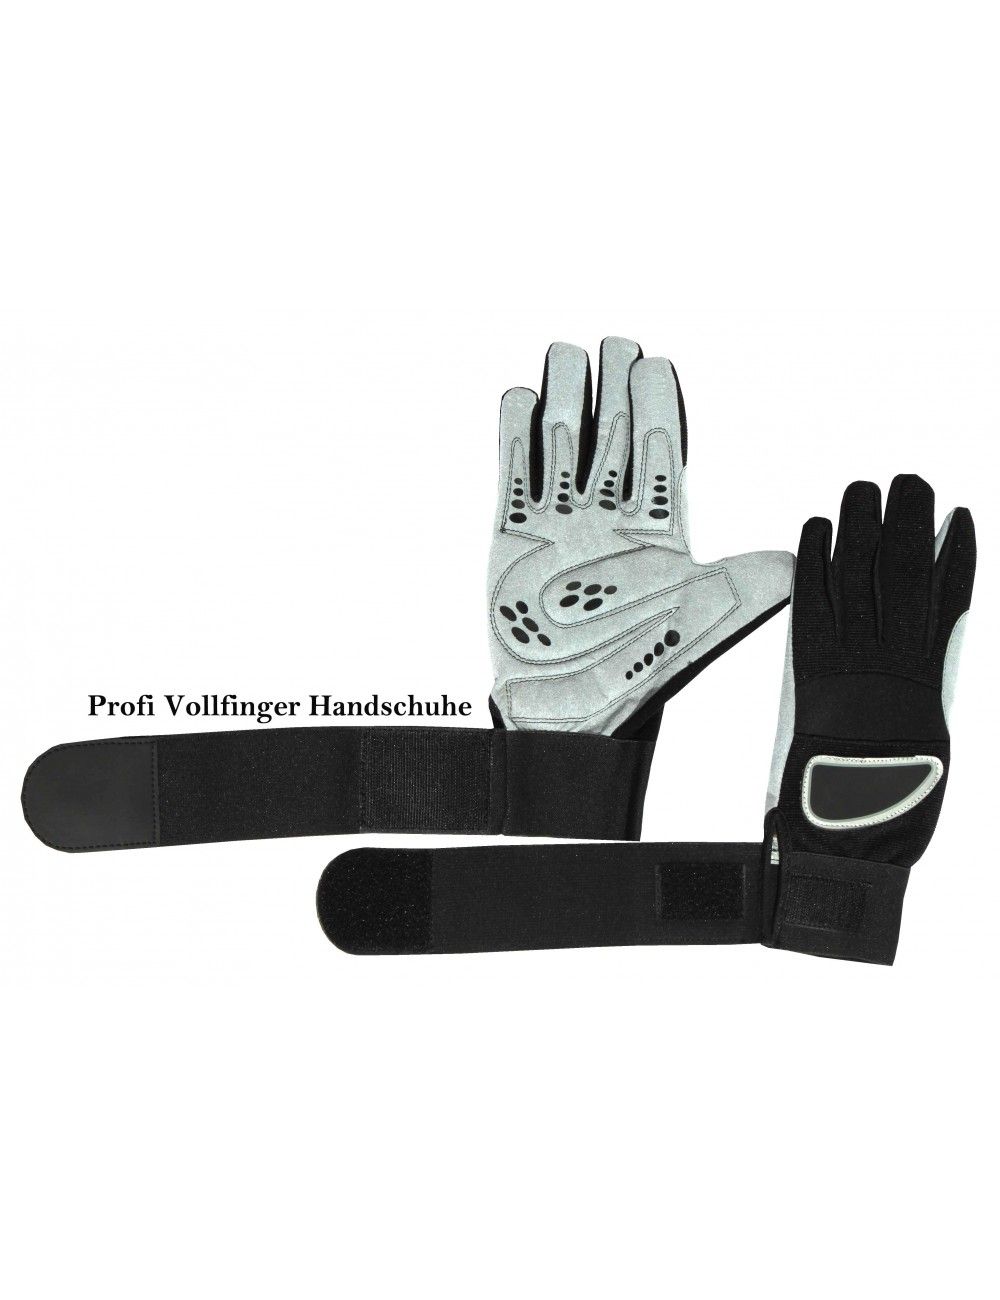 Cross Fitness Handschuhe Yoga-Handschuh Sport-und Fitness-Handschuh Vollfinger 